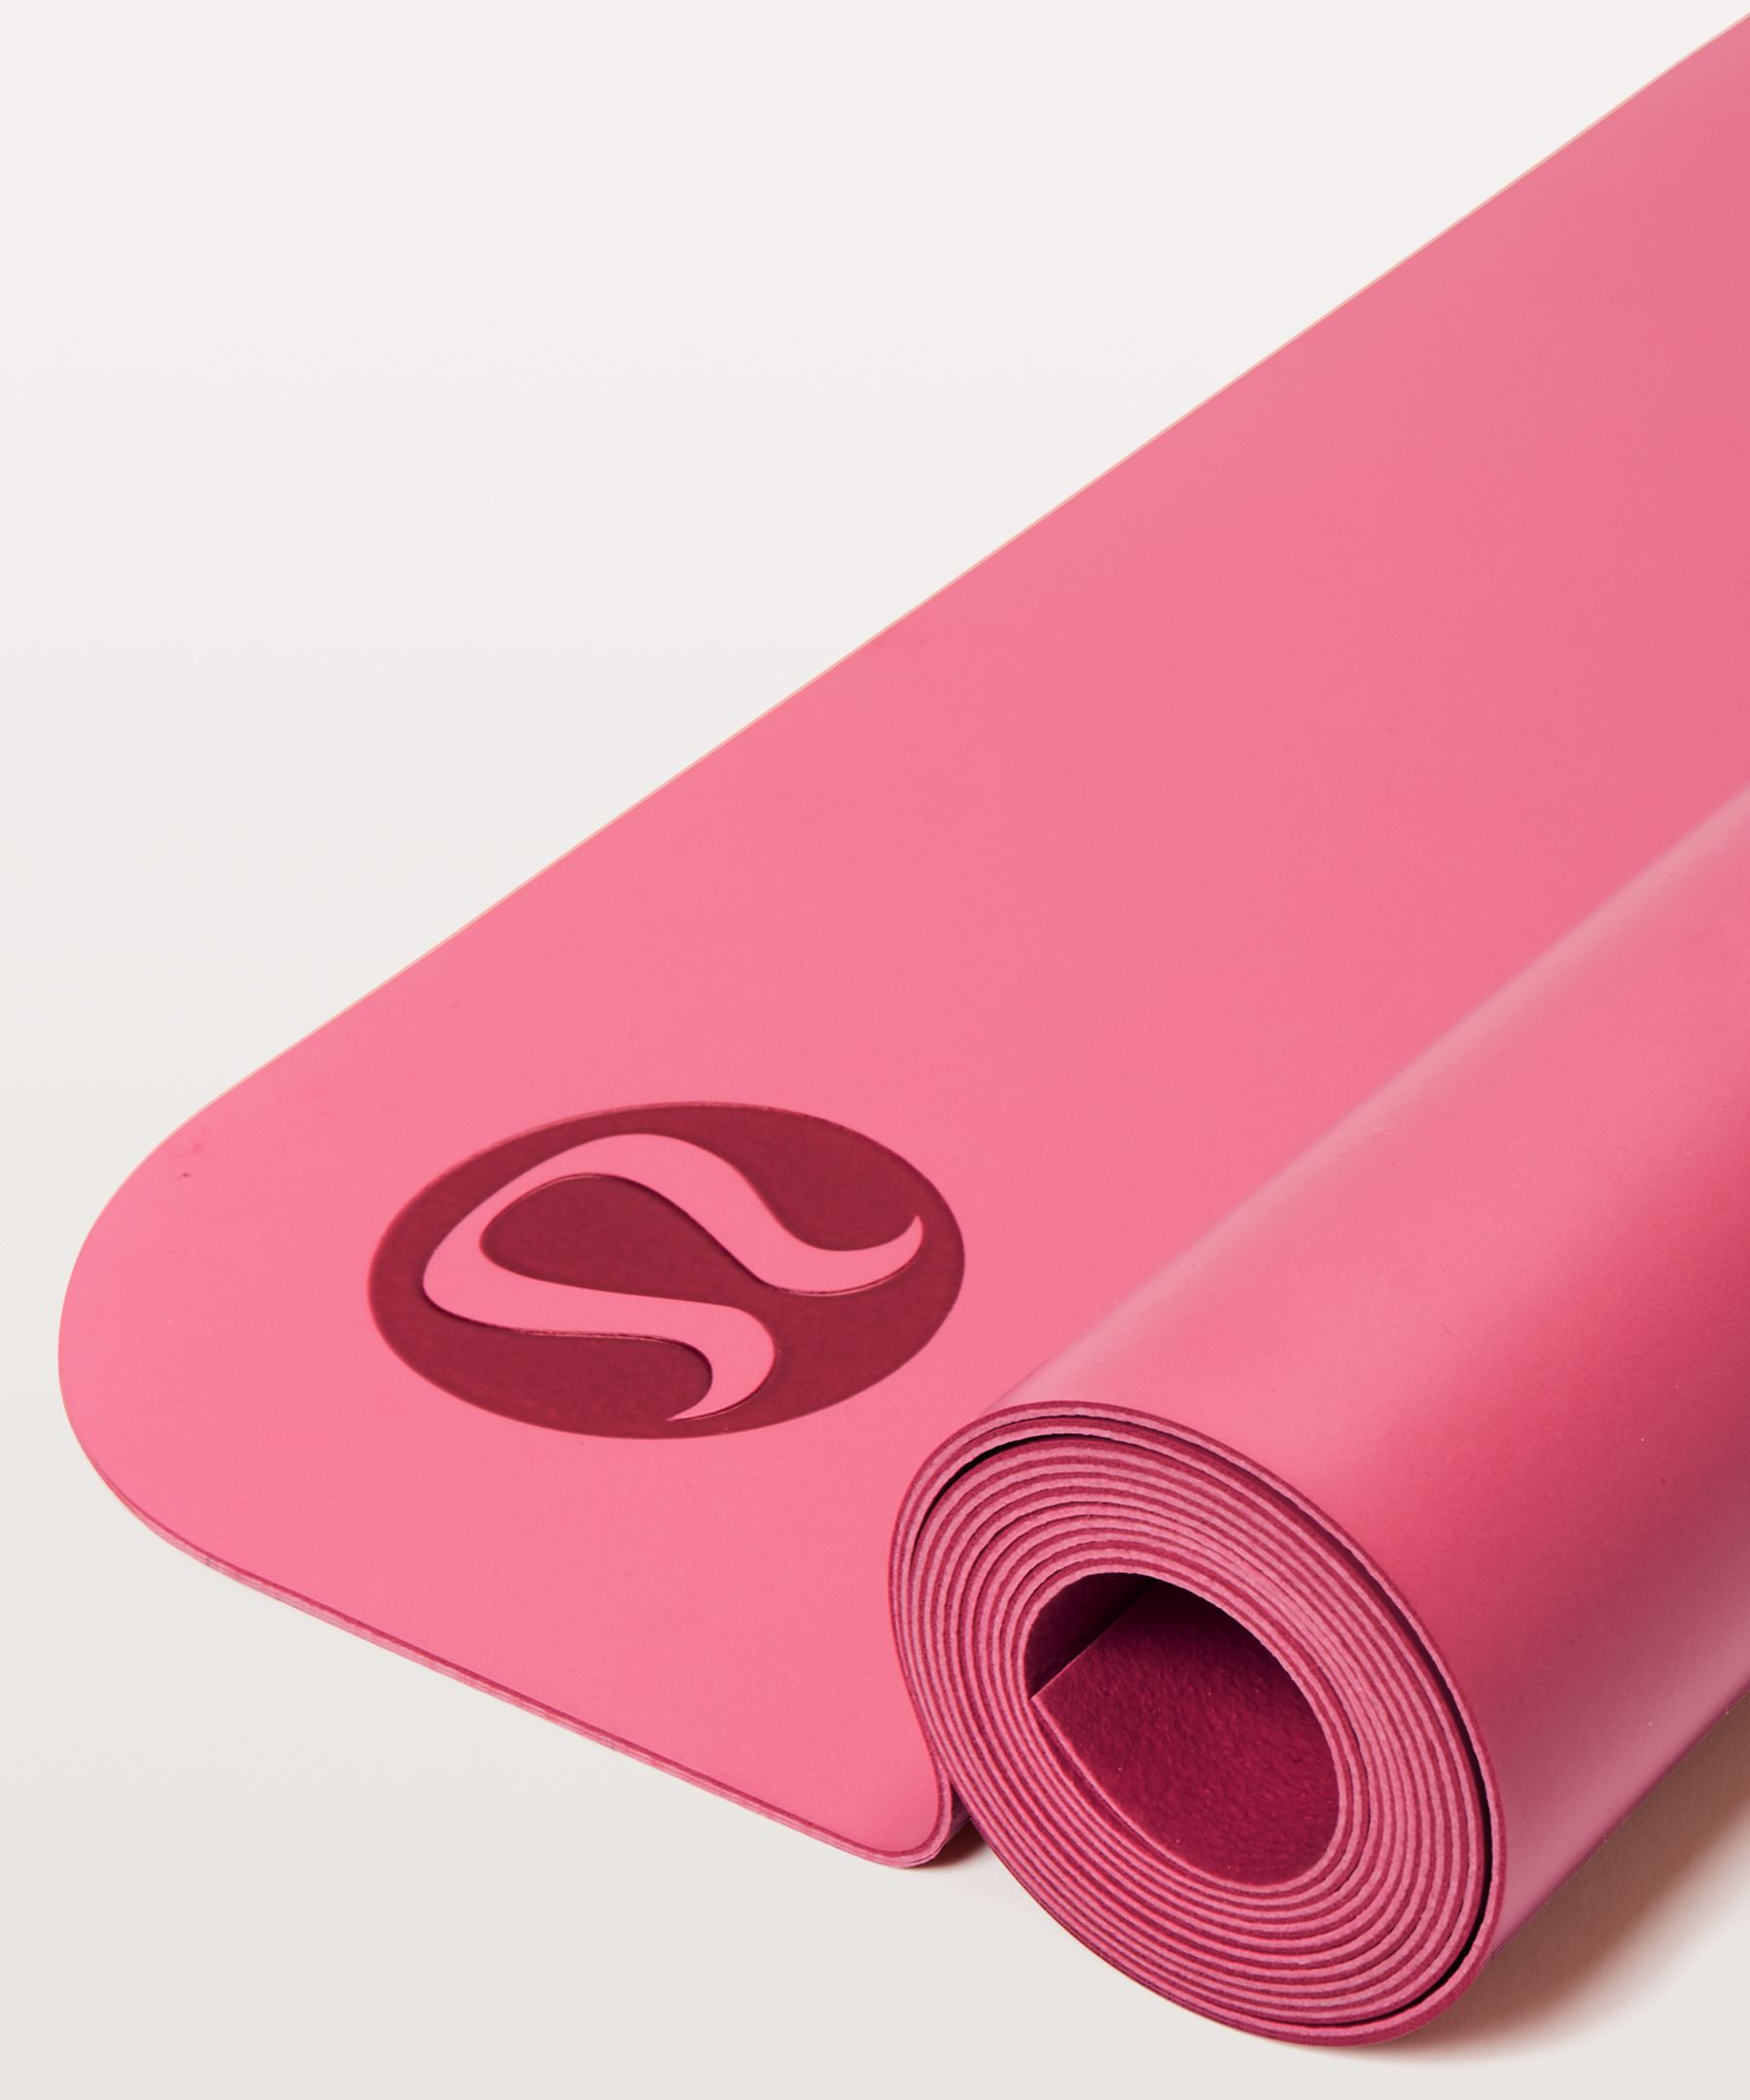 Lululemon Take Form Yoga Mat 5mm In Pink Savannah/white/pink Savannah |  ModeSens